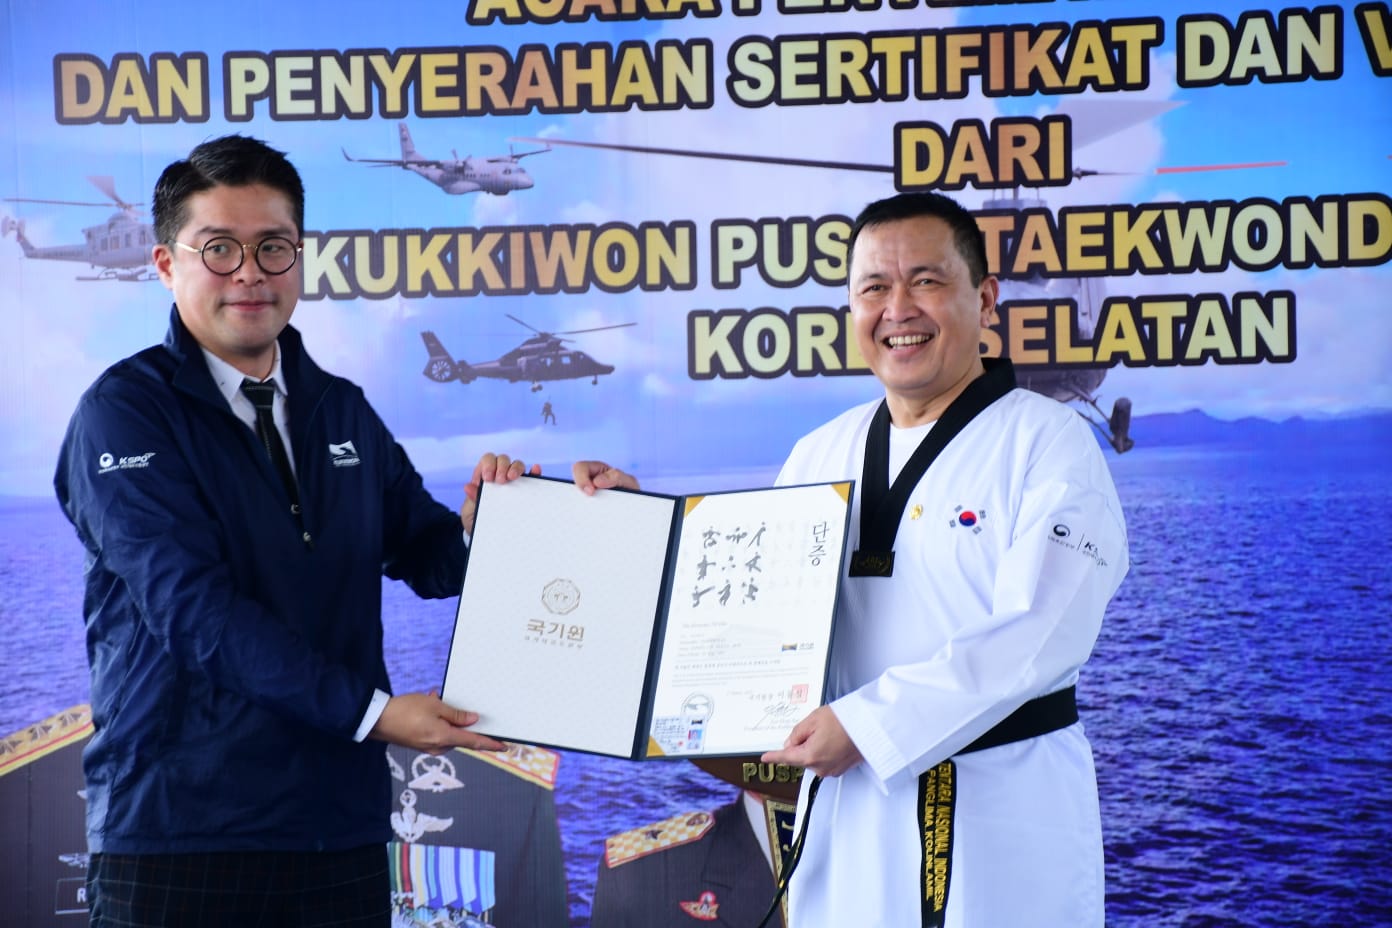 Penyematan Sabuk Hitam DAN V Kehormatan Kukkiwon kepada Ketua Pembina M45TER KICK TAEKWONDO Surabaya